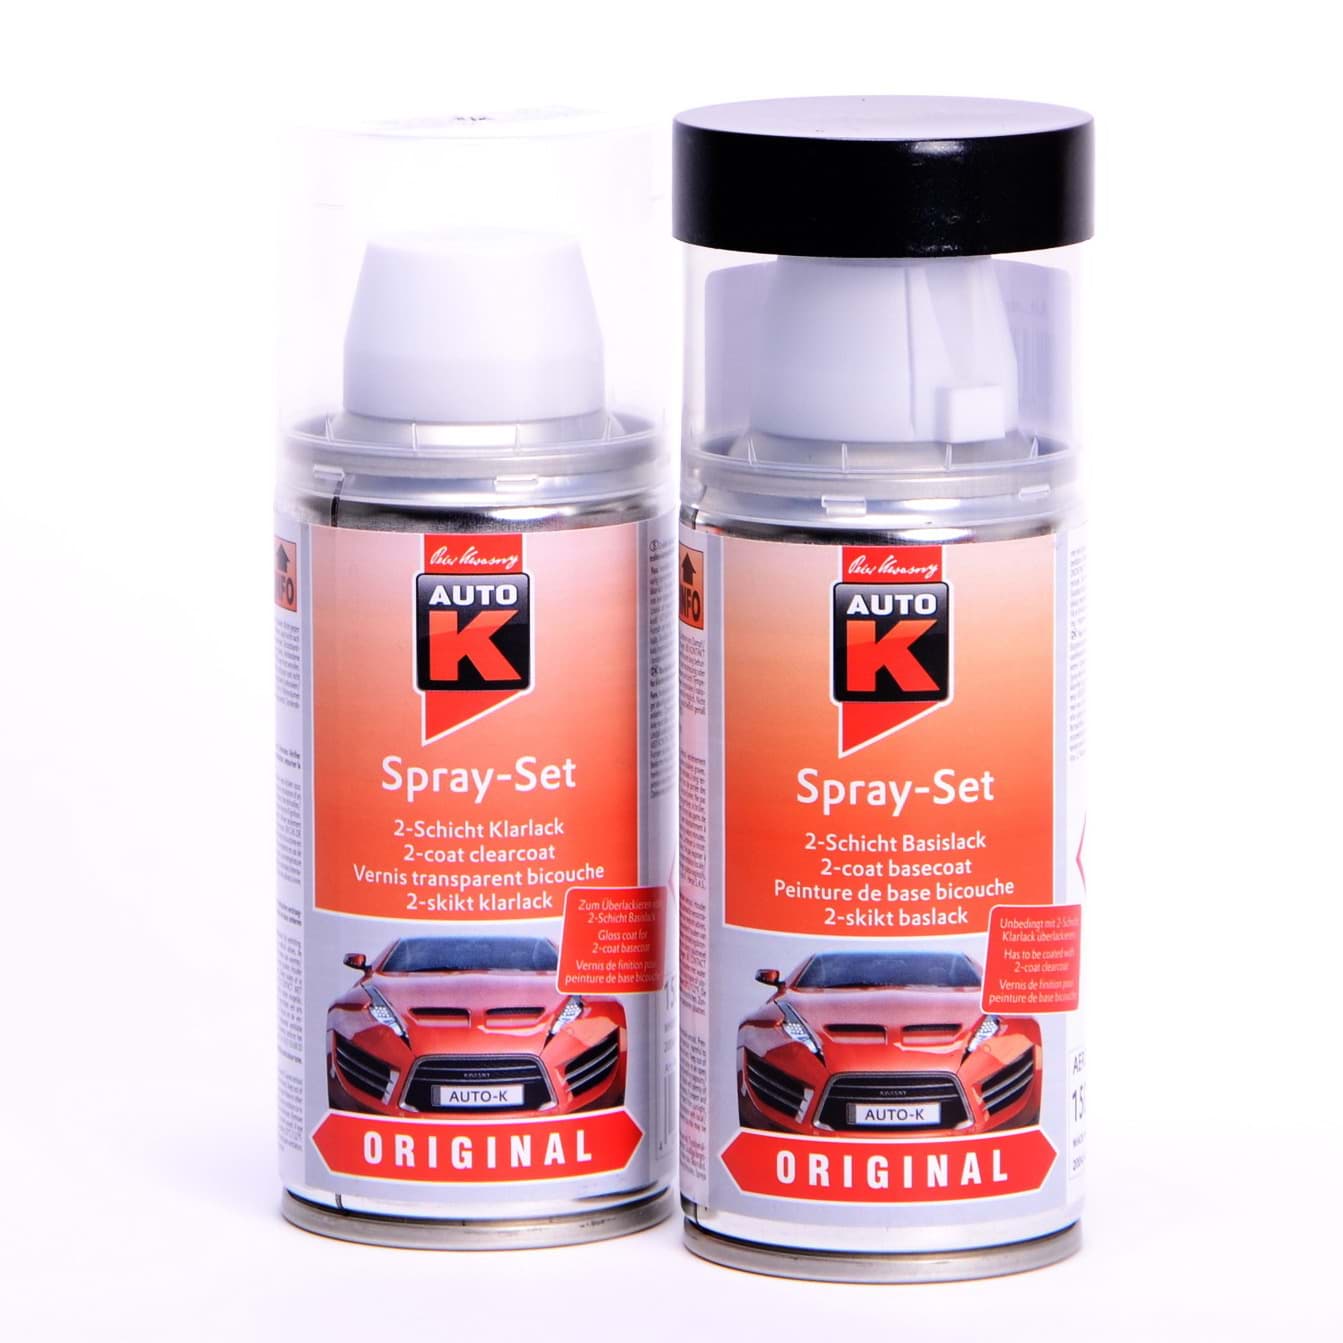 Afbeelding van Auto-K Spray-Set Autolack für Volkswagen, VW, Audi LA9V Brillantschwarz met 20649